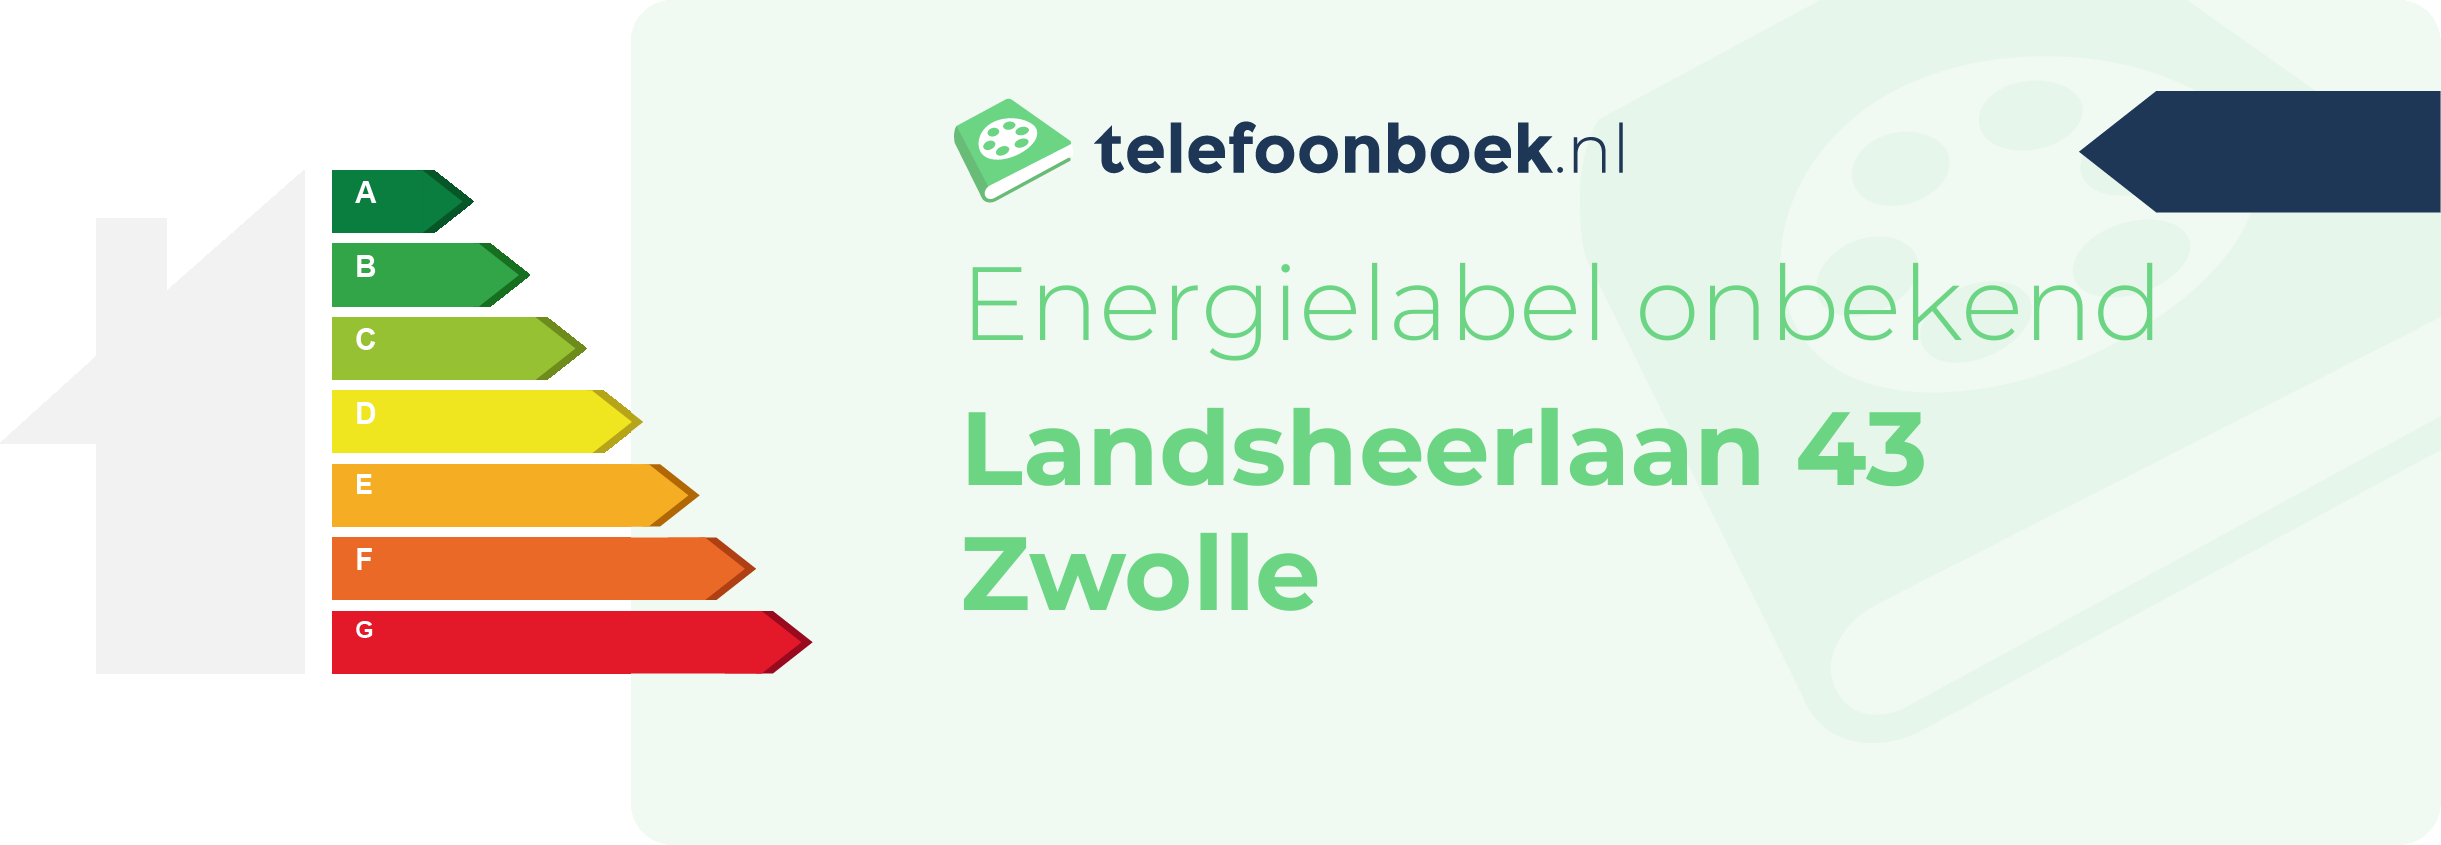 Energielabel Landsheerlaan 43 Zwolle